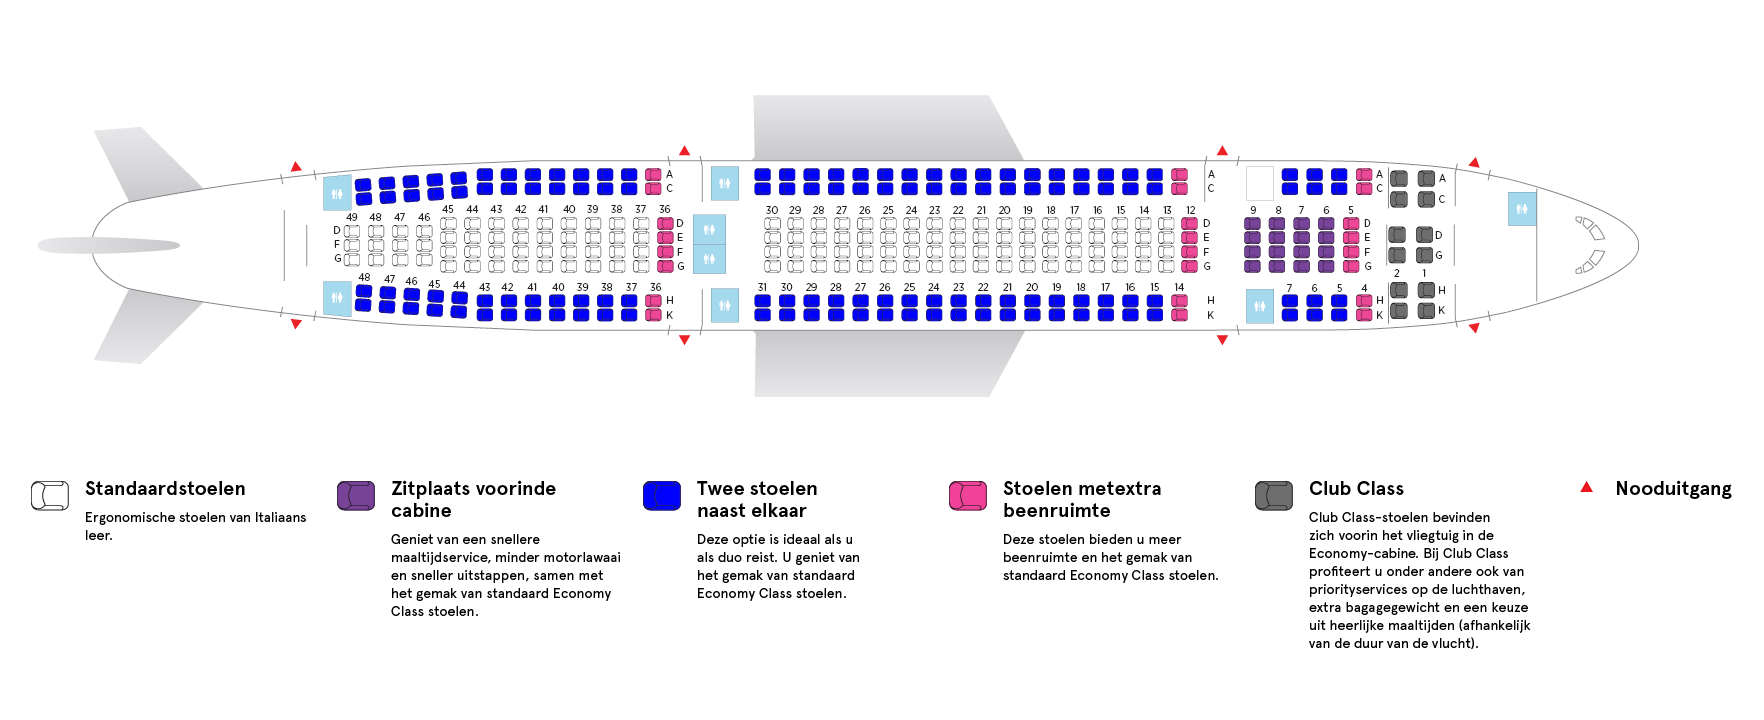 Cabine van Air Transat’s Airbus A330-200 Low Density